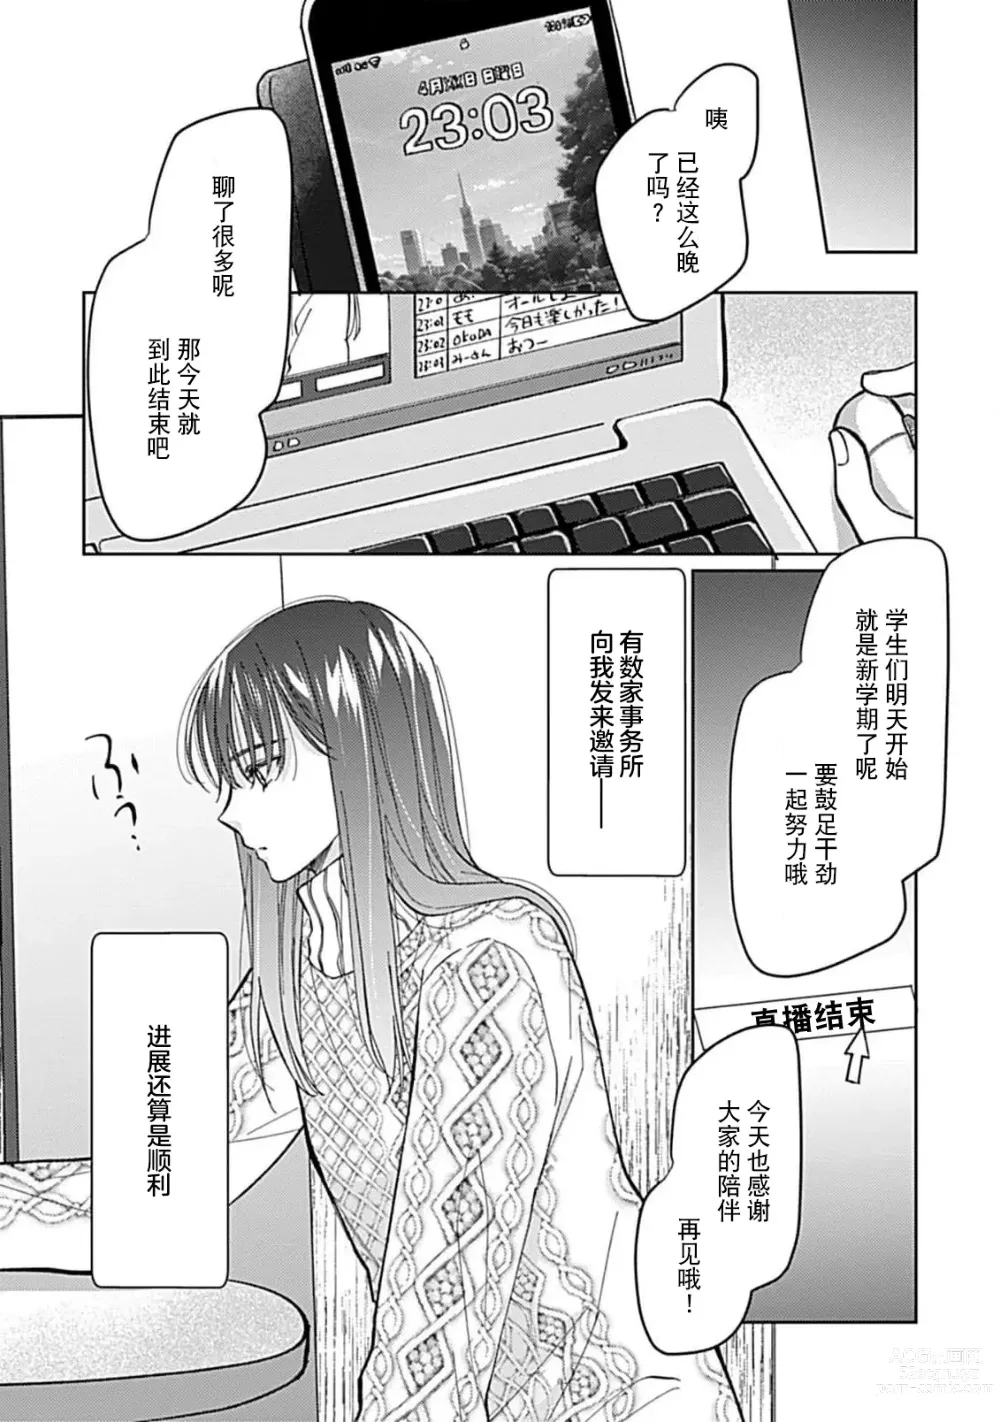 Page 8 of manga 恋情与秘密难以映照 1